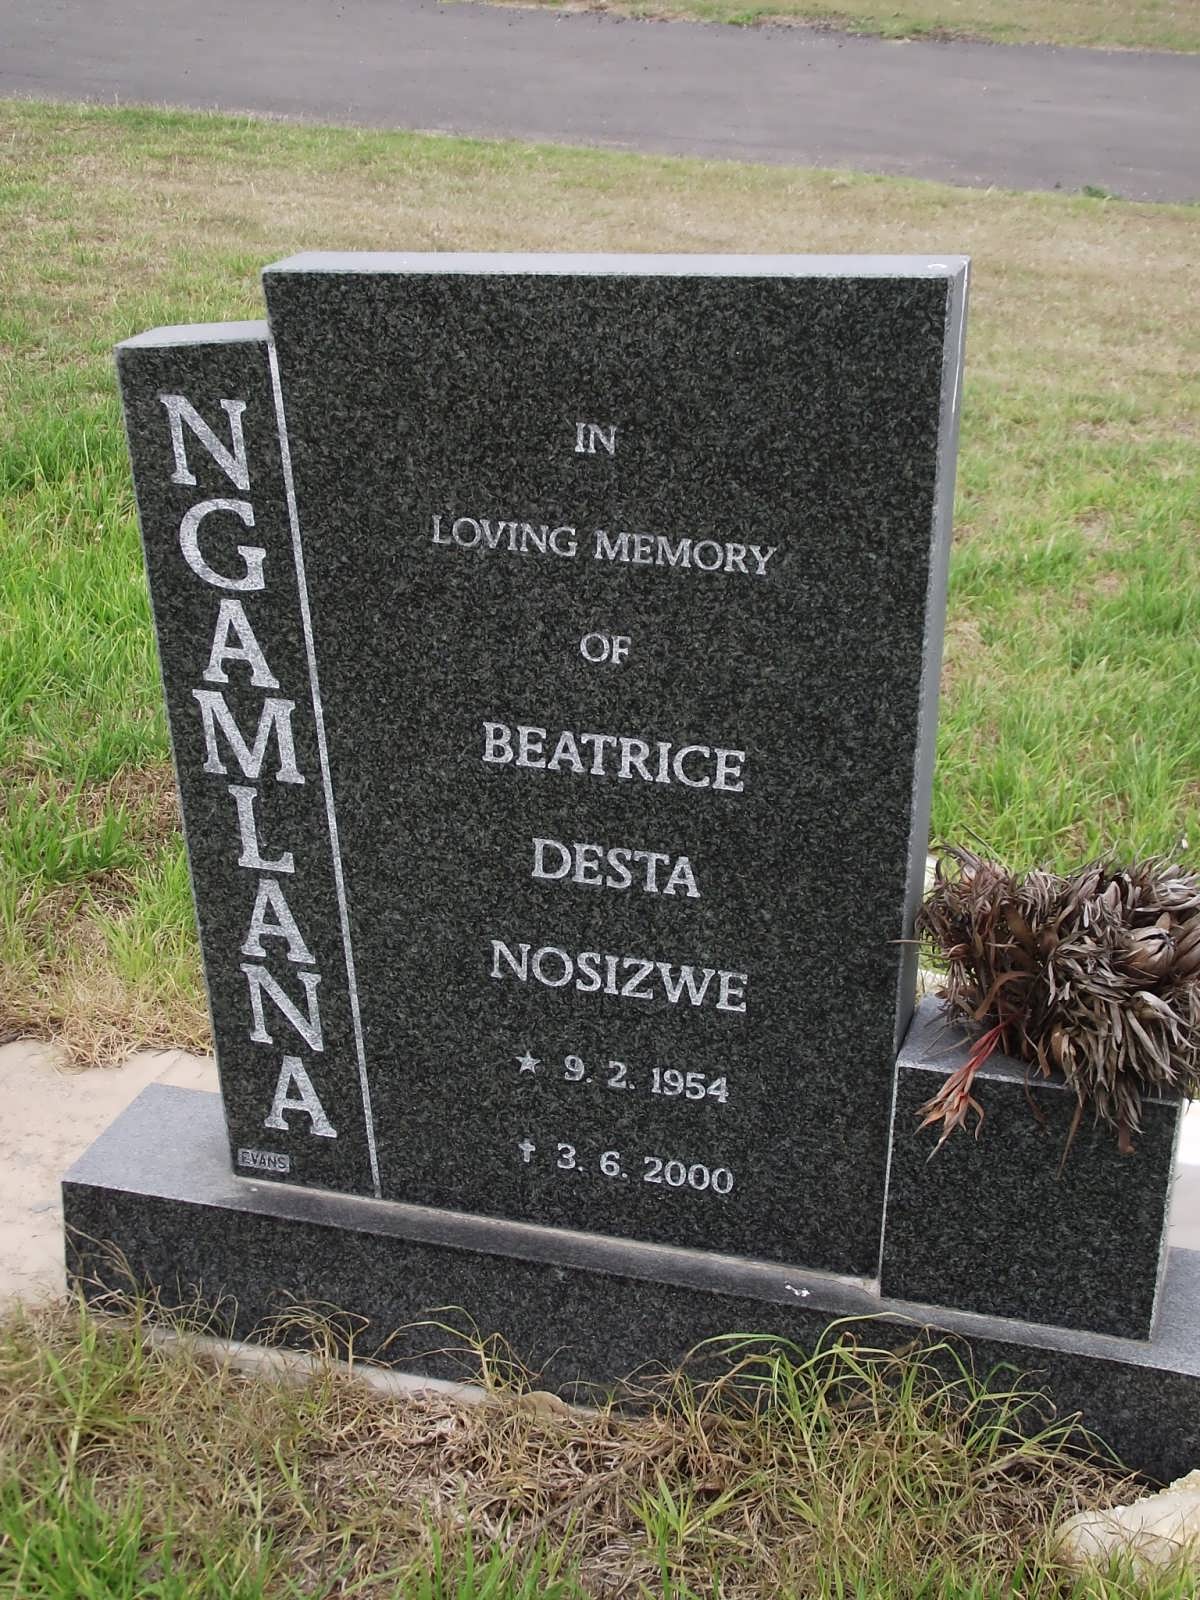 NGAMLANA Beatrice Desta Nosizwe 1954-2000